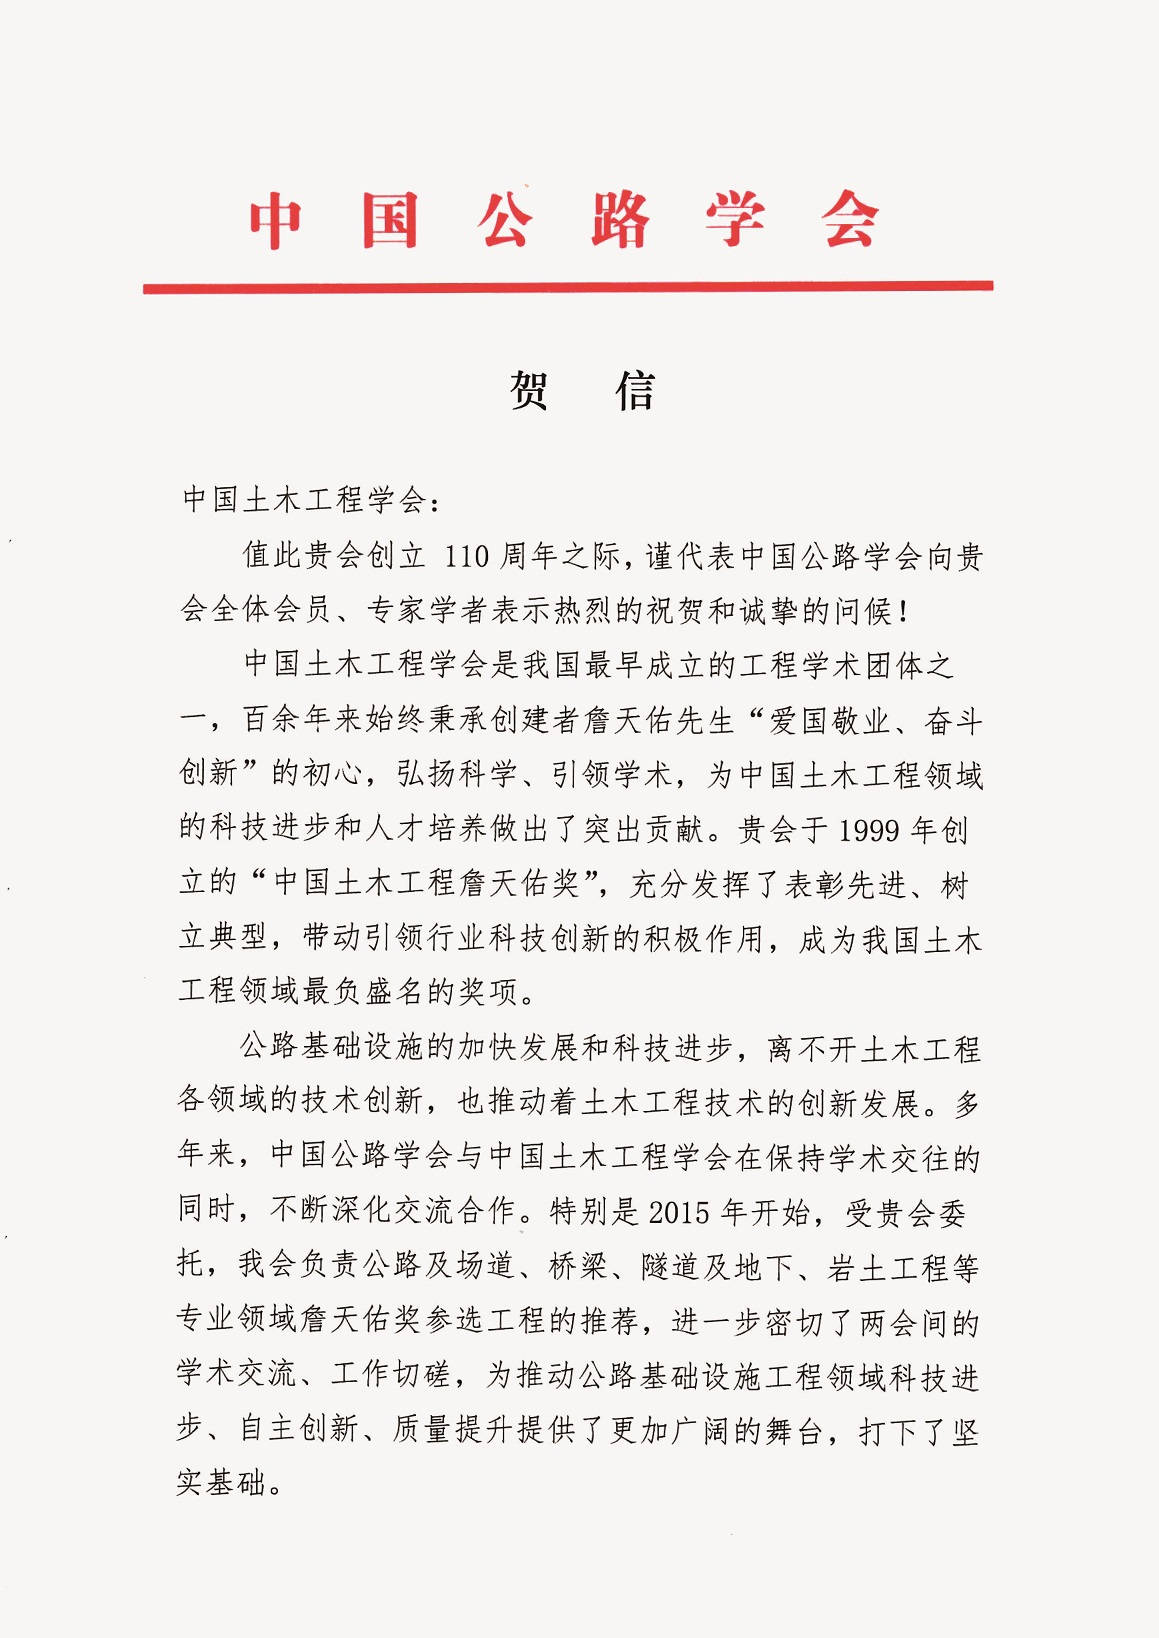 中国公路学会党委书记、理事长翁孟勇贺信